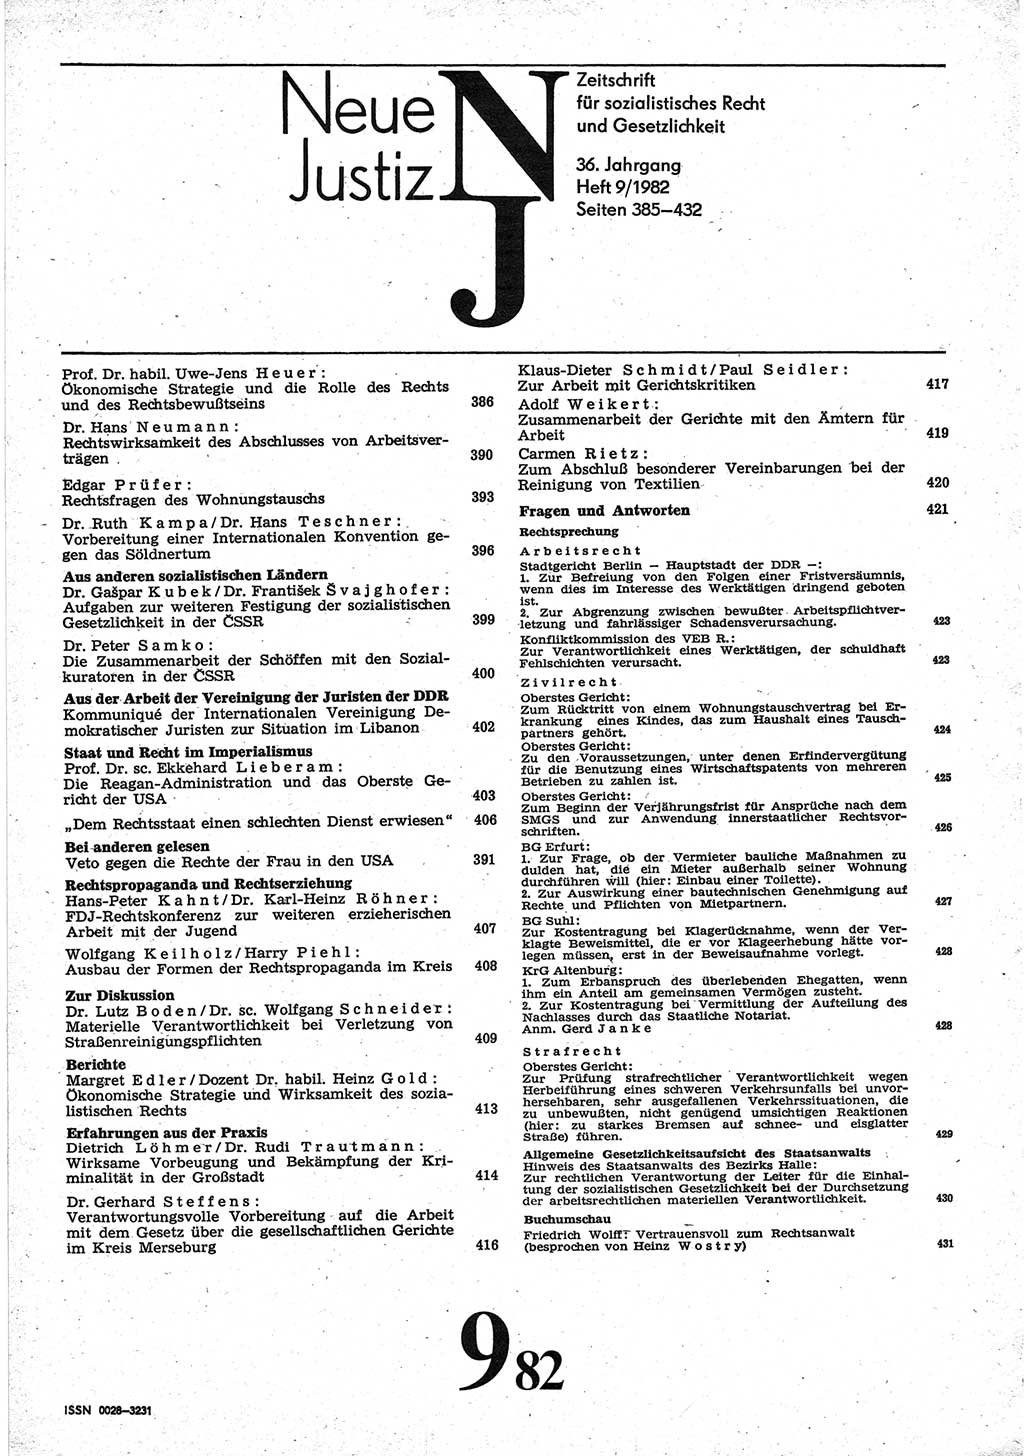 Neue Justiz (NJ), Zeitschrift für sozialistisches Recht und Gesetzlichkeit [Deutsche Demokratische Republik (DDR)], 36. Jahrgang 1982, Seite 385 (NJ DDR 1982, S. 385)